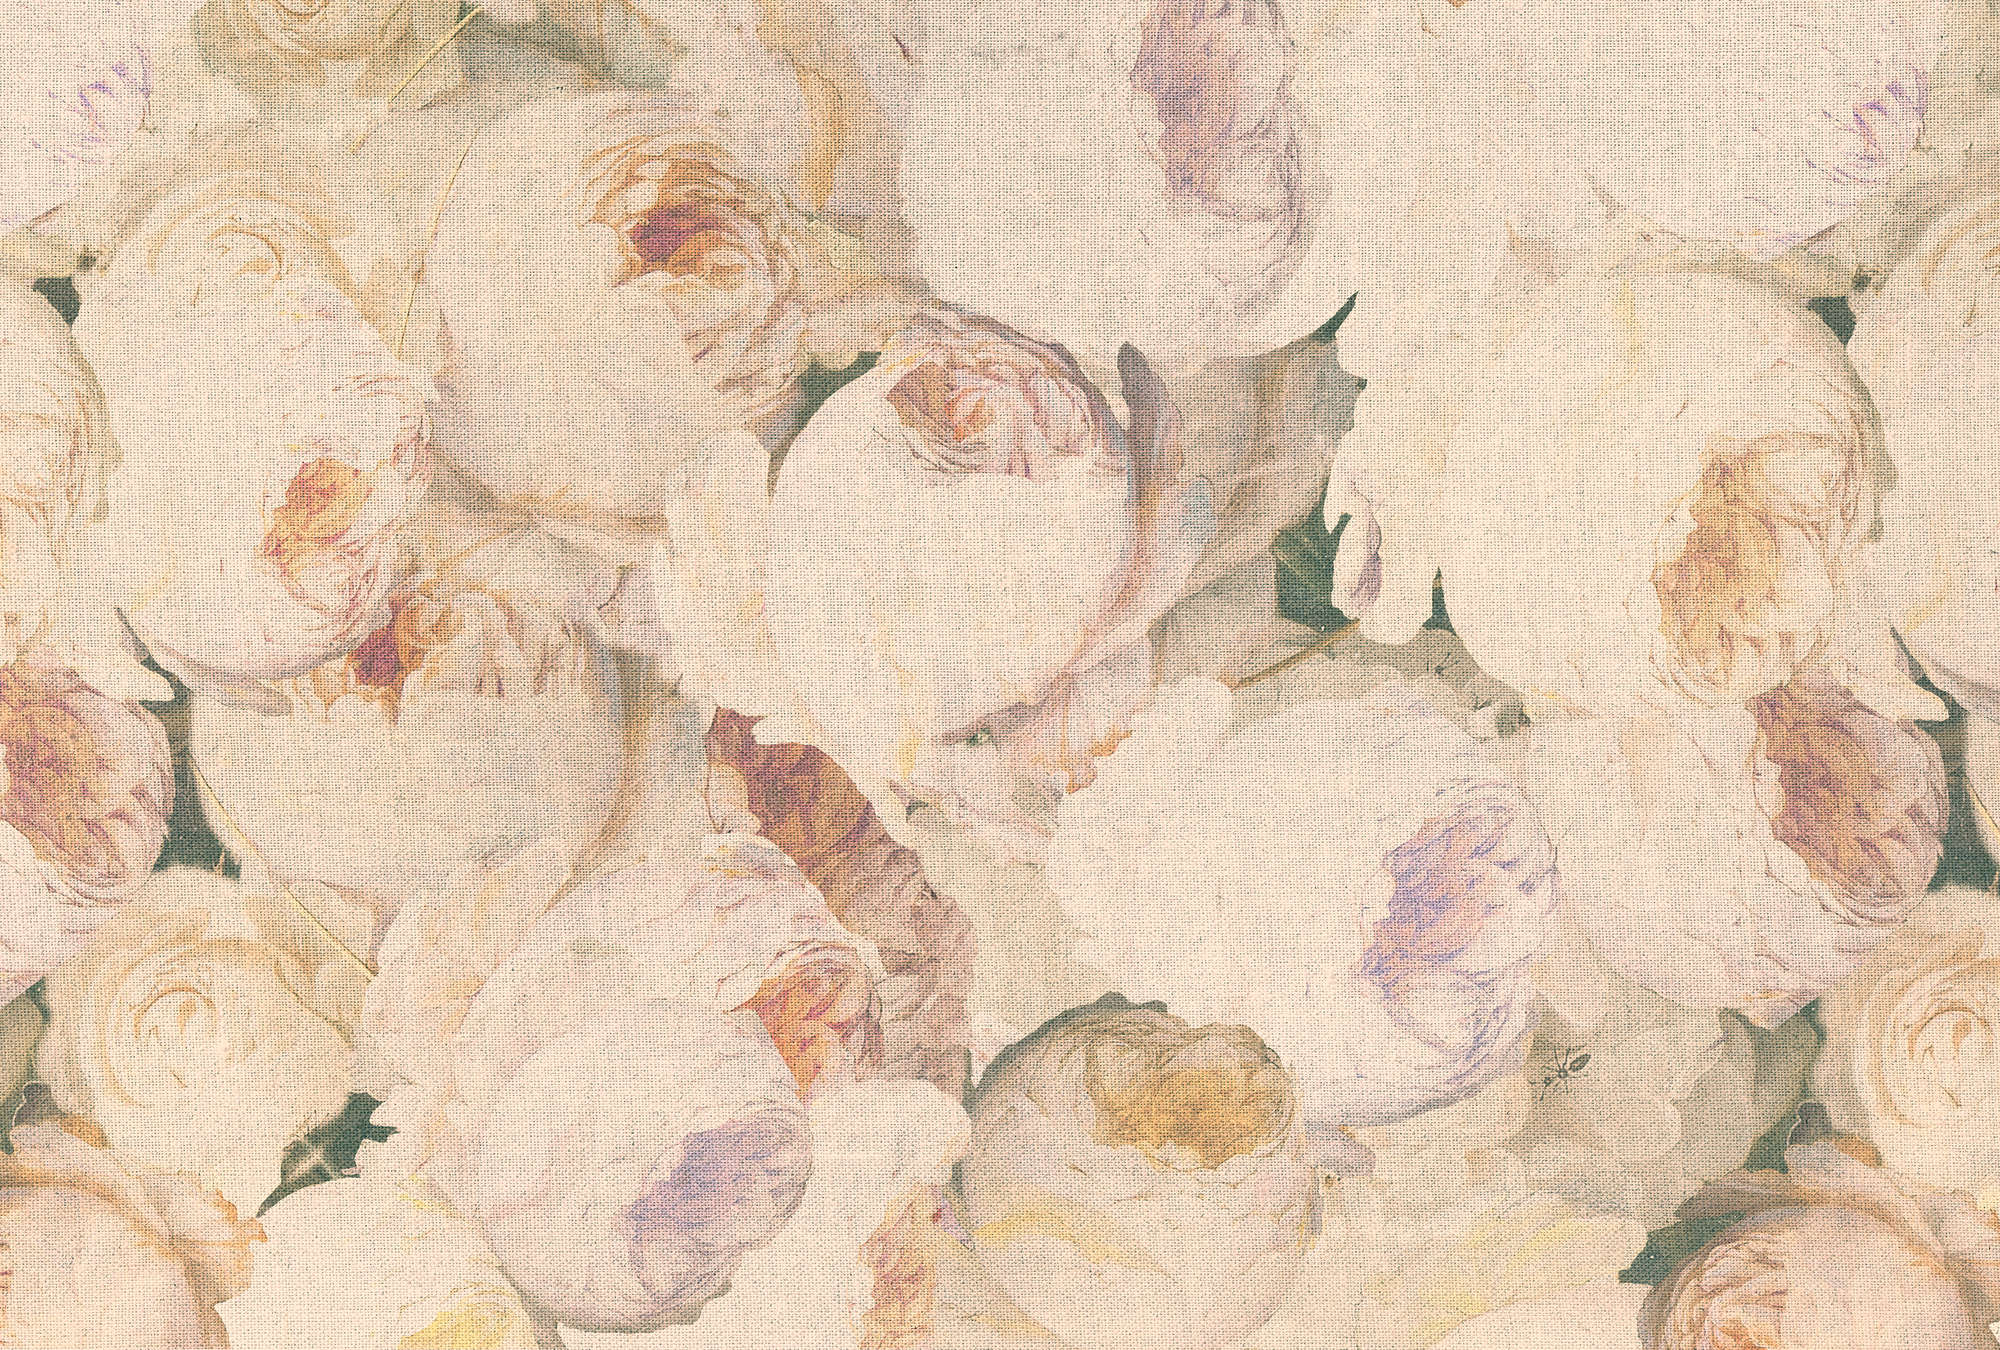             Papel pintado con aspecto de rosas, flores y lino - crema, rosa
        